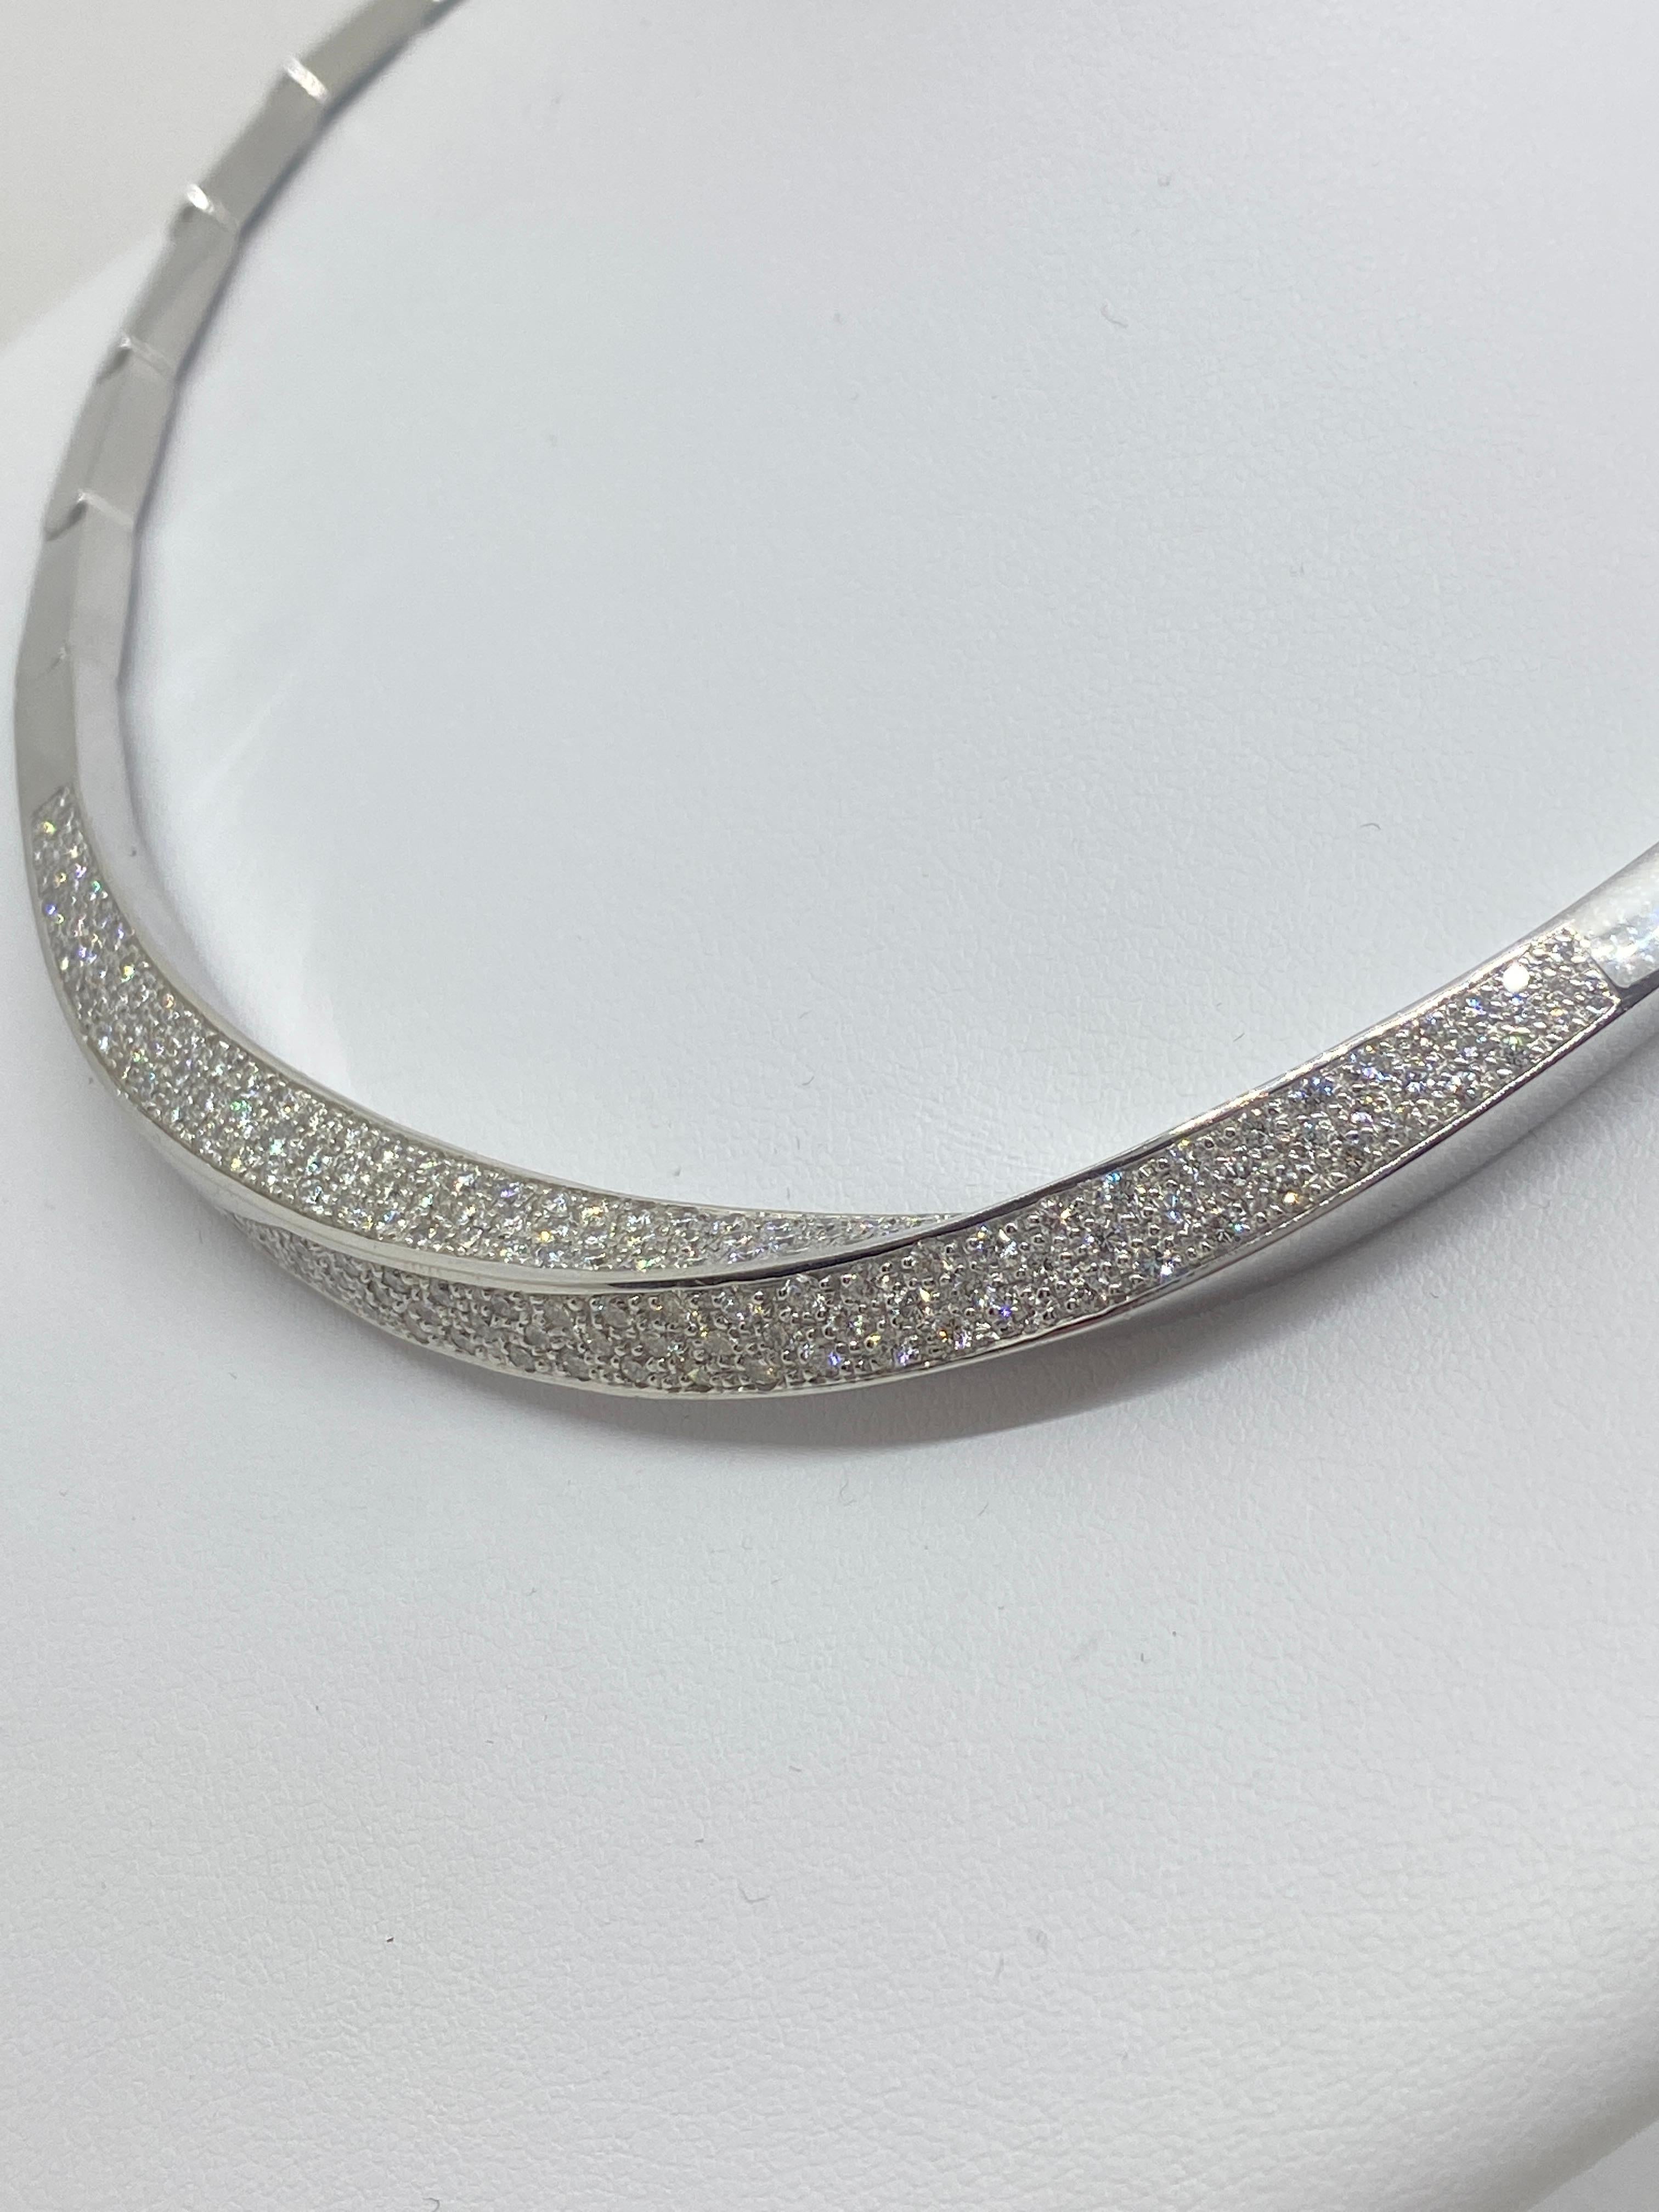 18 Karat White Gold Wave Necklace Brilliant Cut Diamonds 3.06 Carat For Sale 1